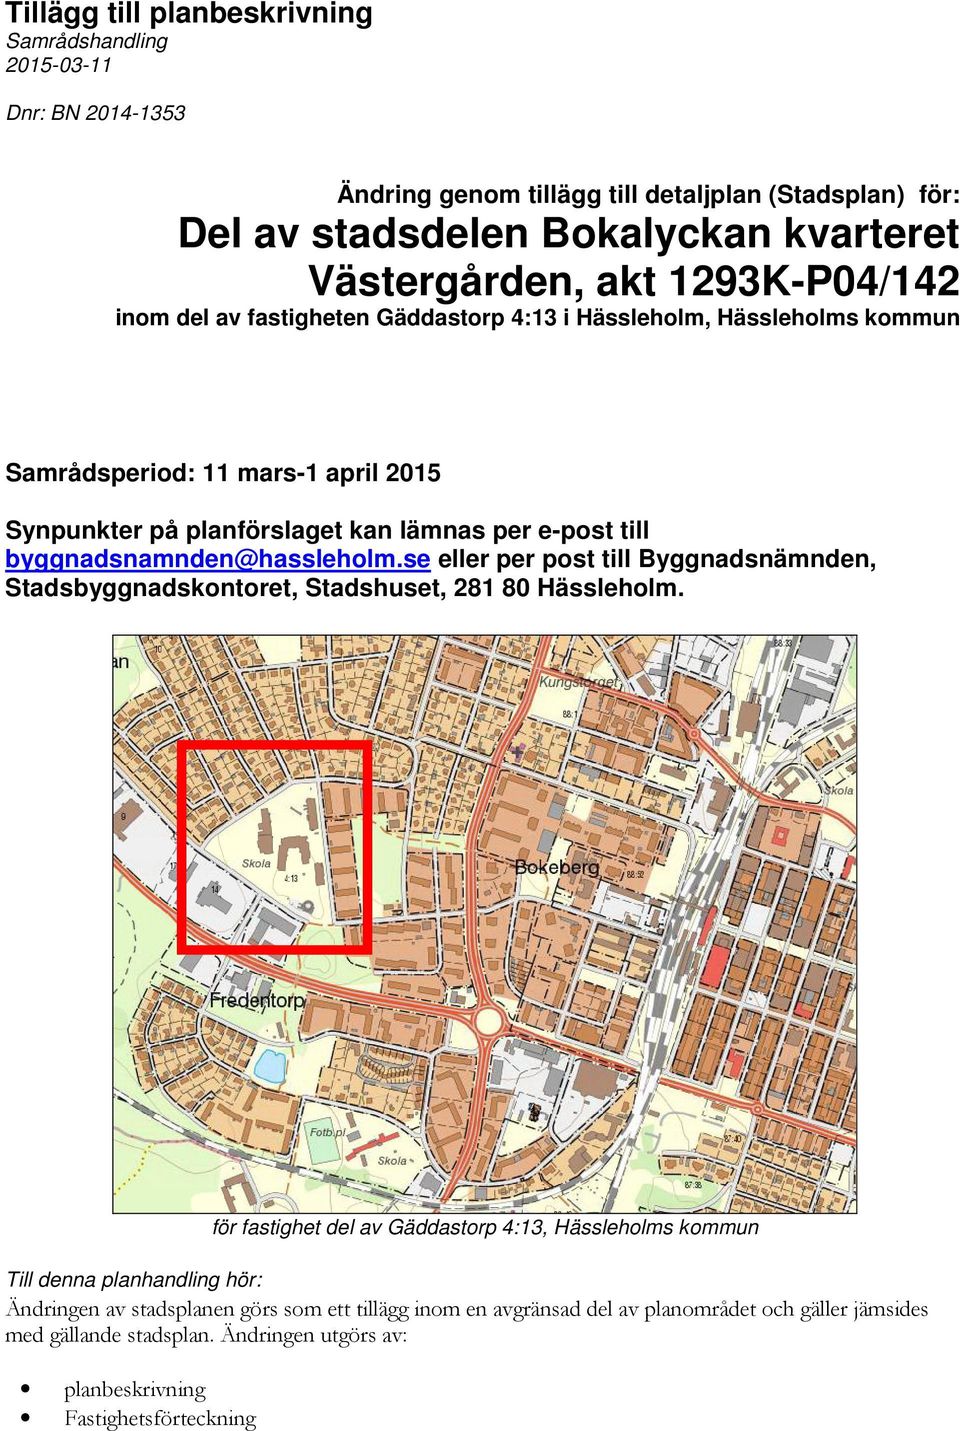 byggnadsnamnden@hassleholm.se eller per post till Byggnadsnämnden, Stadsbyggnadskontoret, Stadshuset, 281 80 Hässleholm.